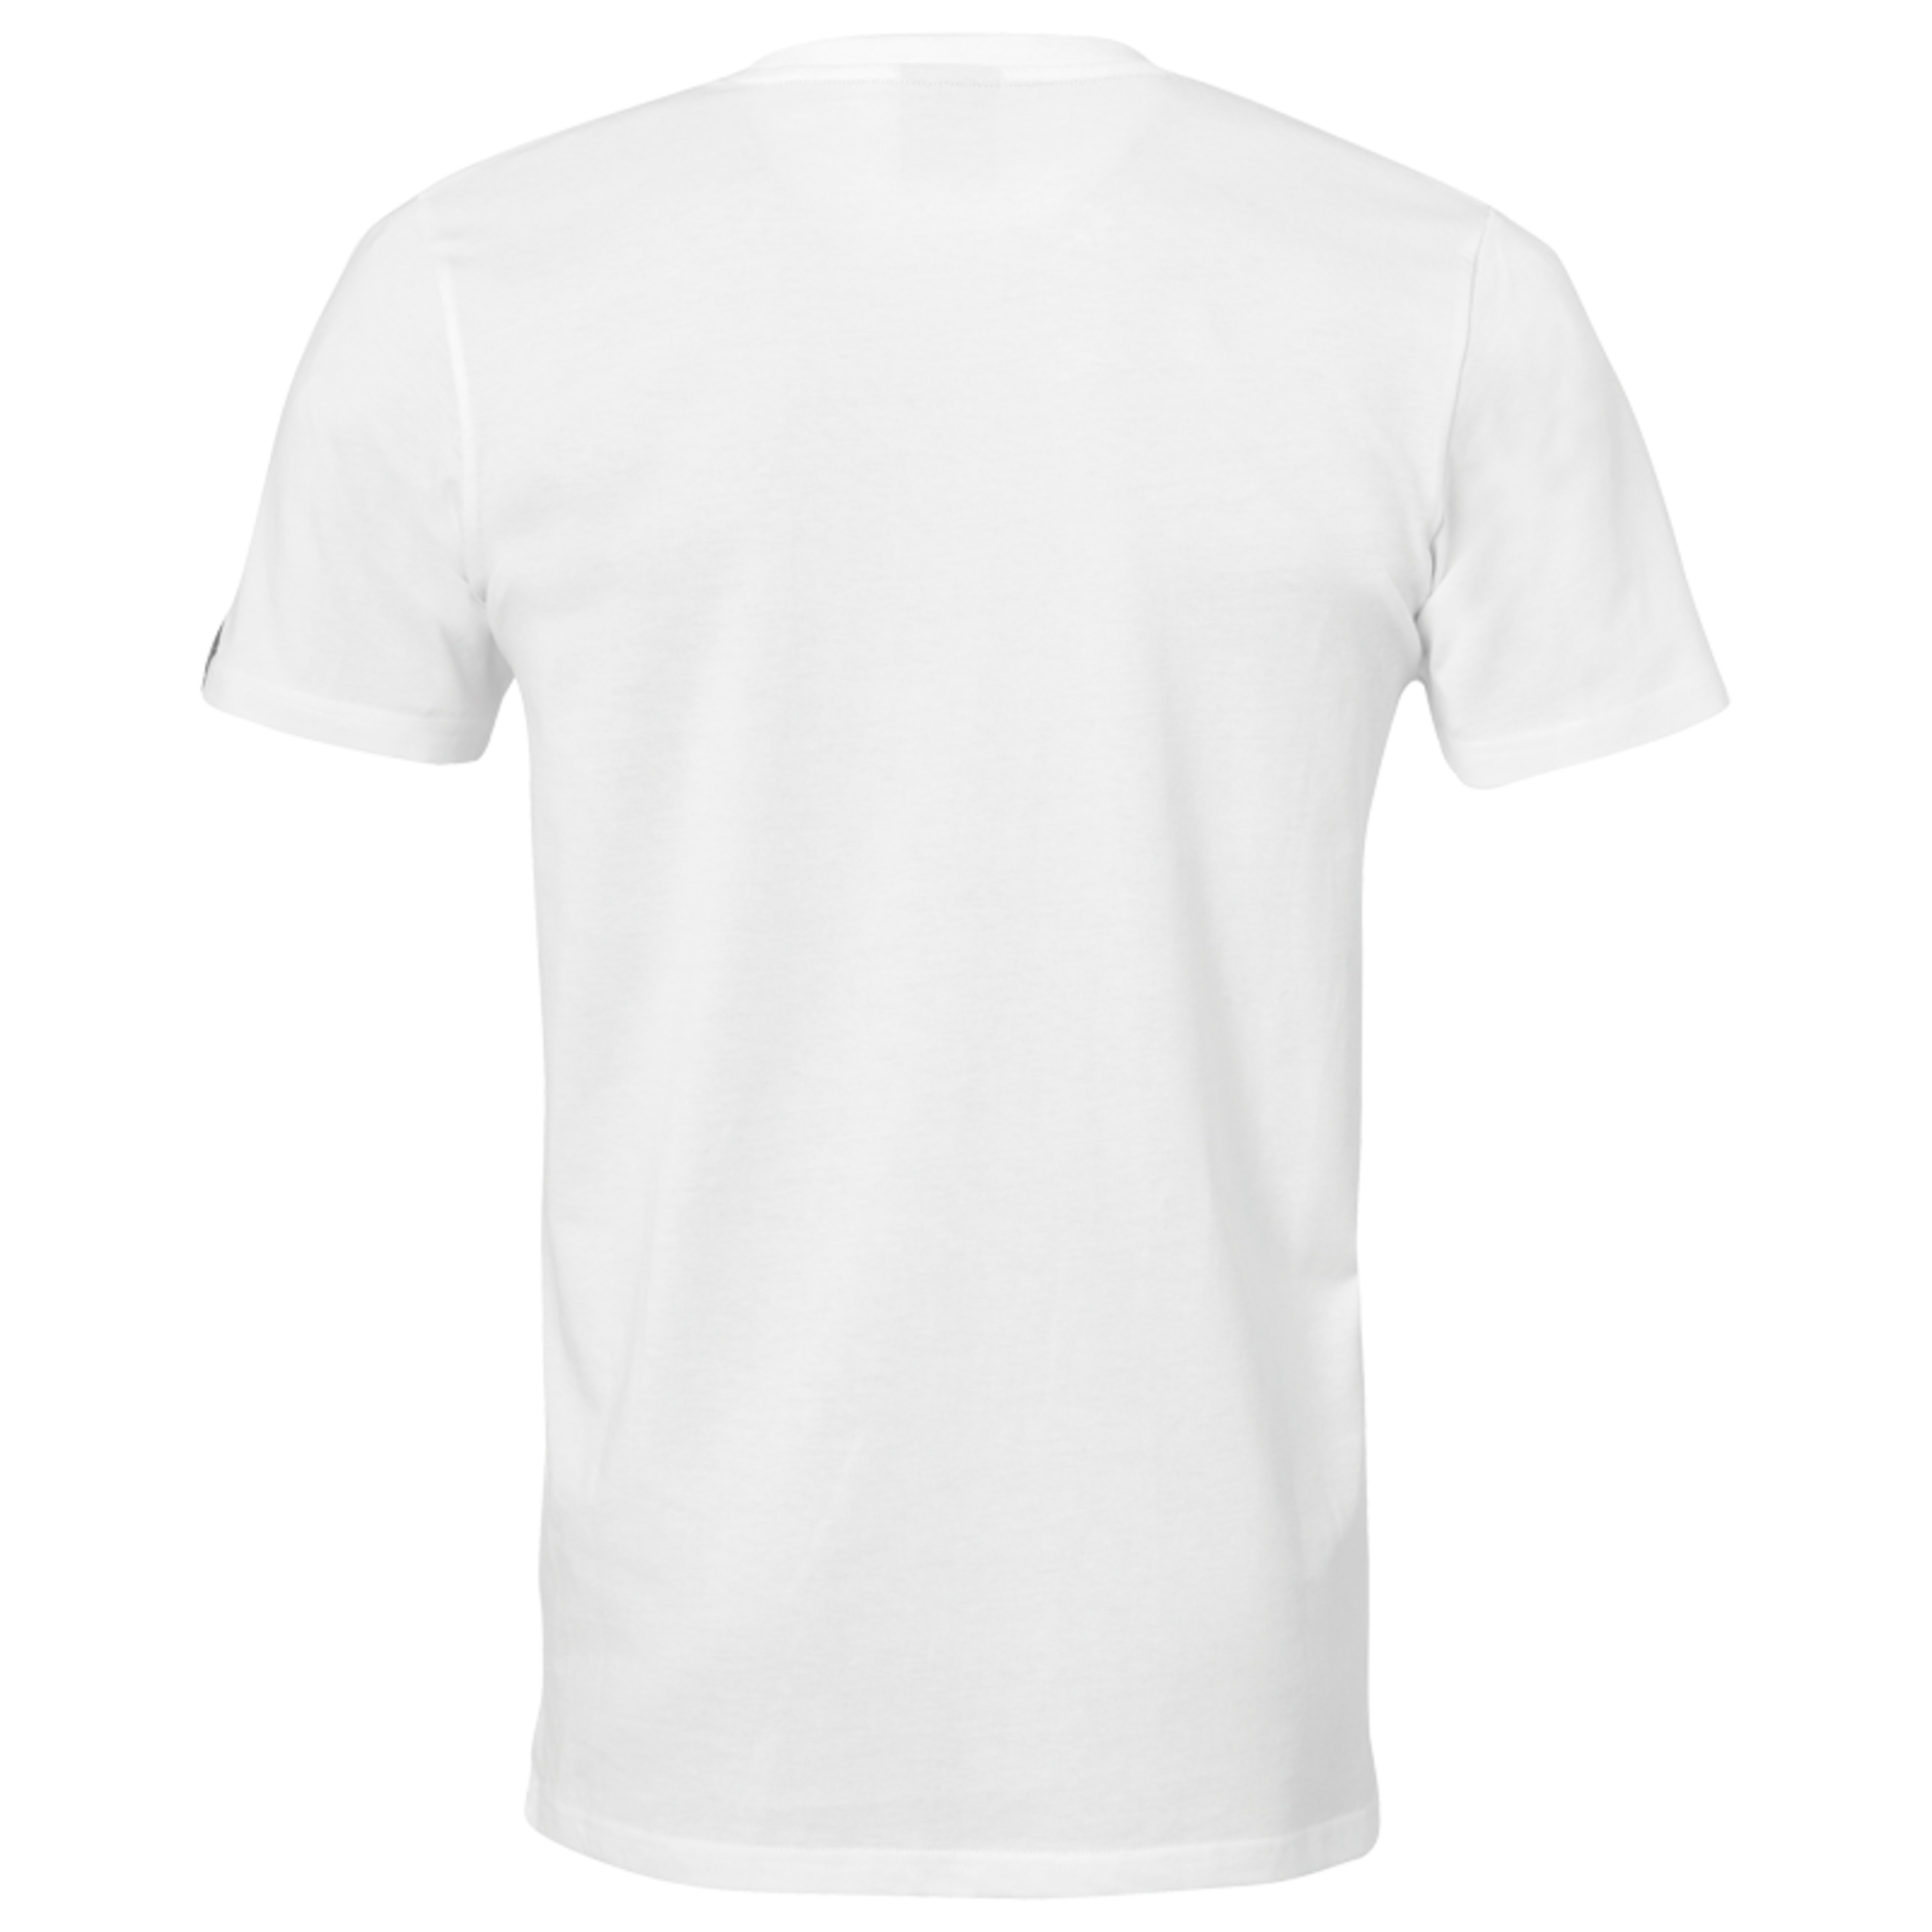 Polygon Player T-shirt White Kempa